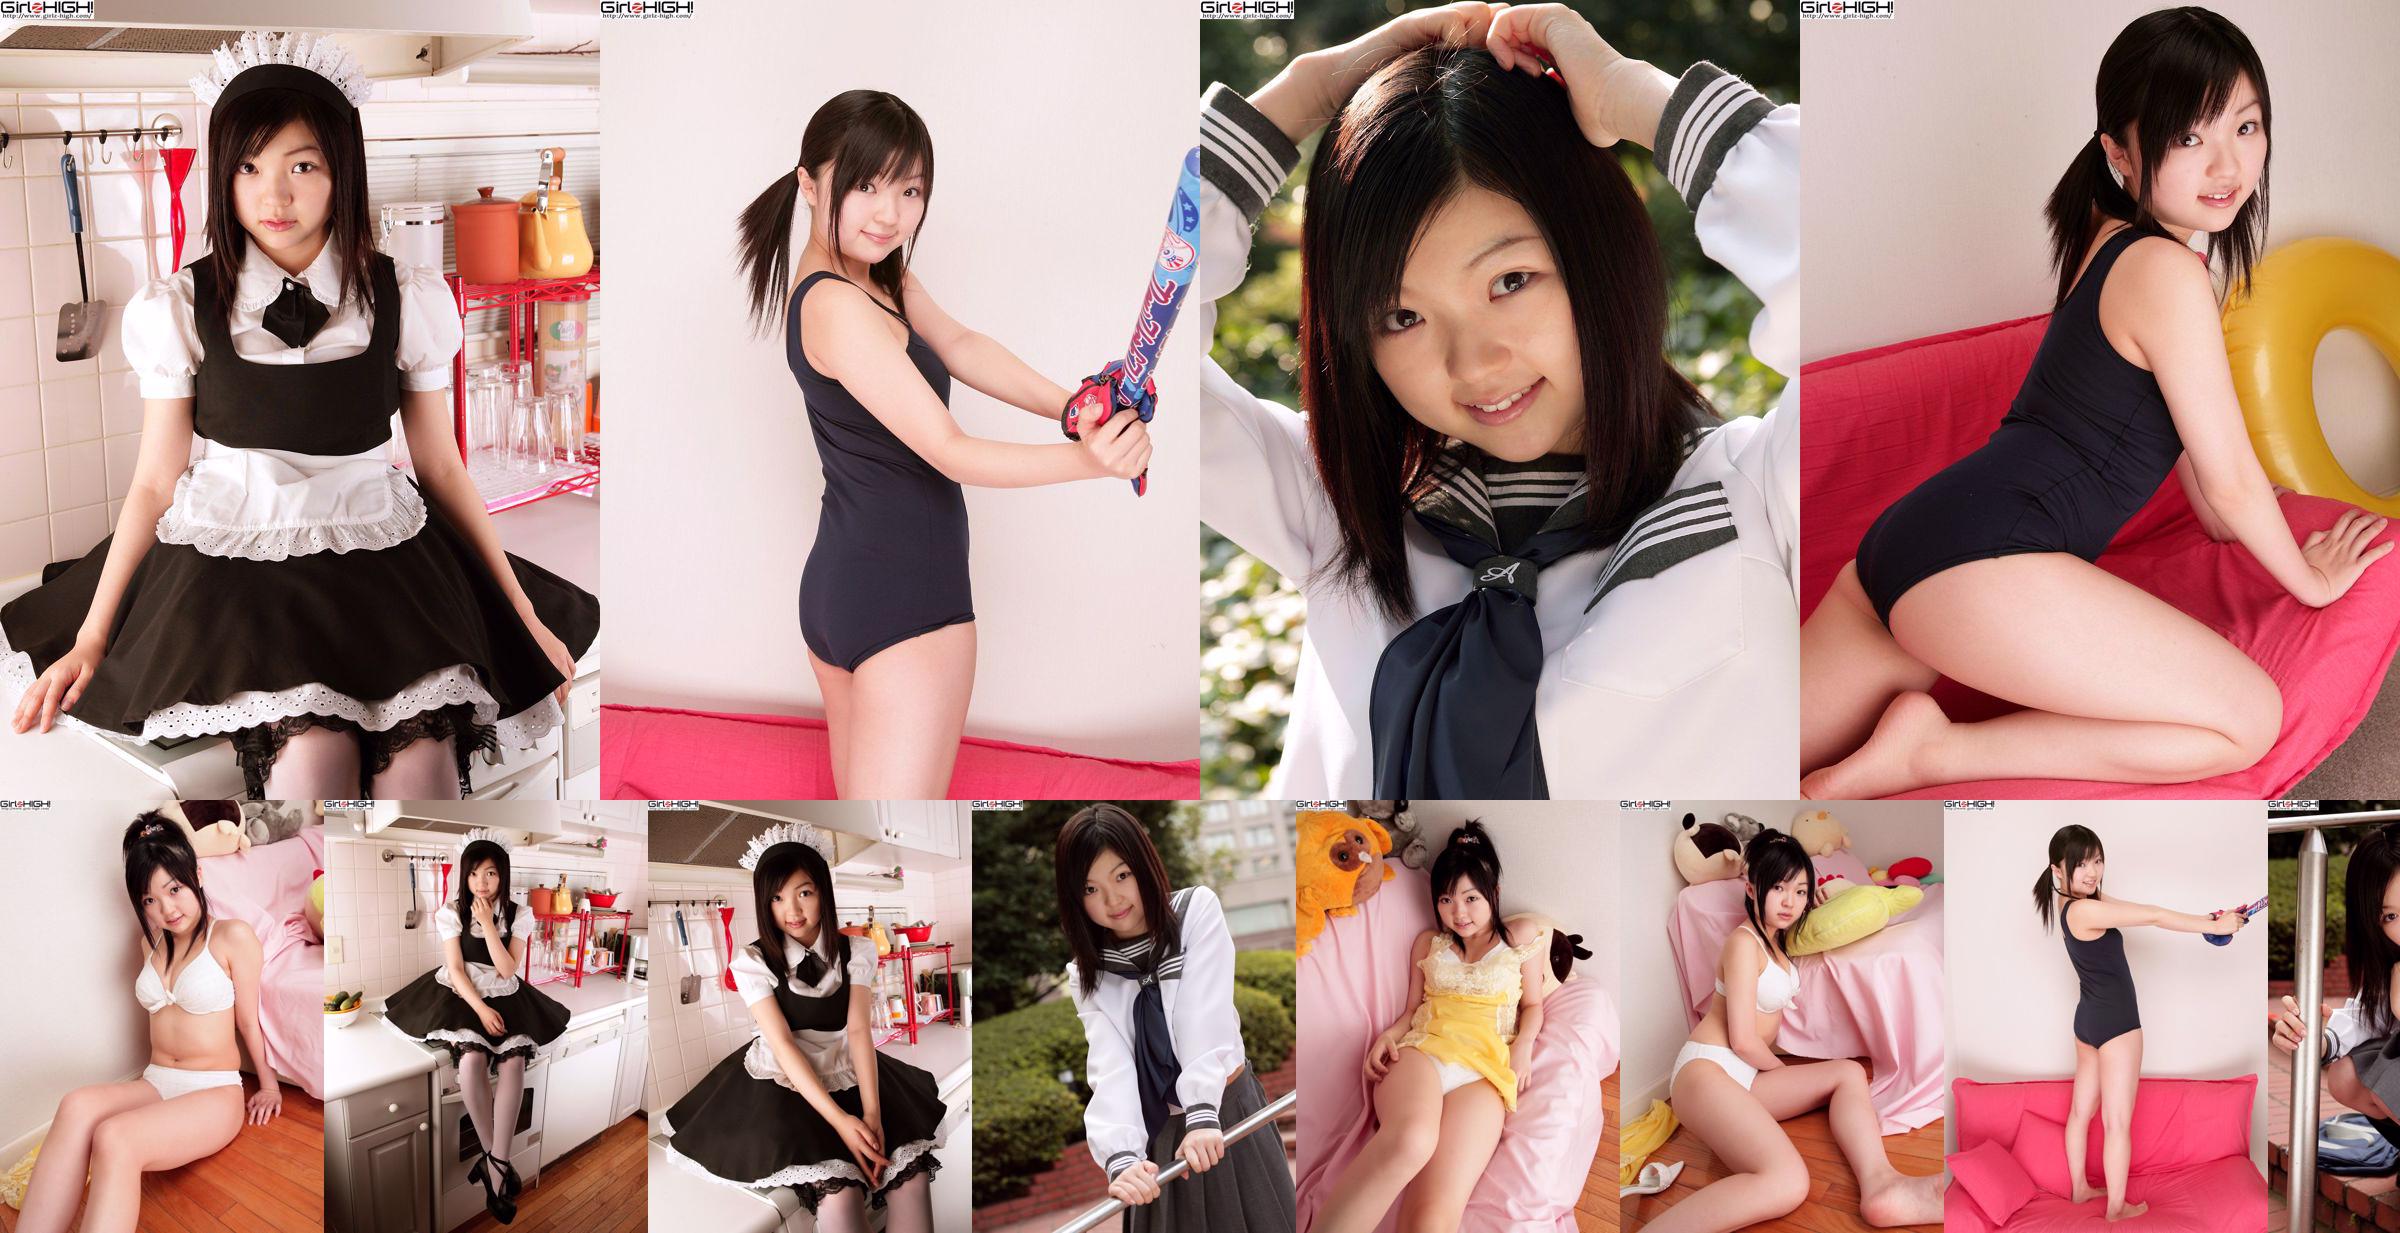 [Girlz-High] Misaki Moe Misaki Gravure Gallery-g074 Photoset 04 No.fb60d2 Pagina 10